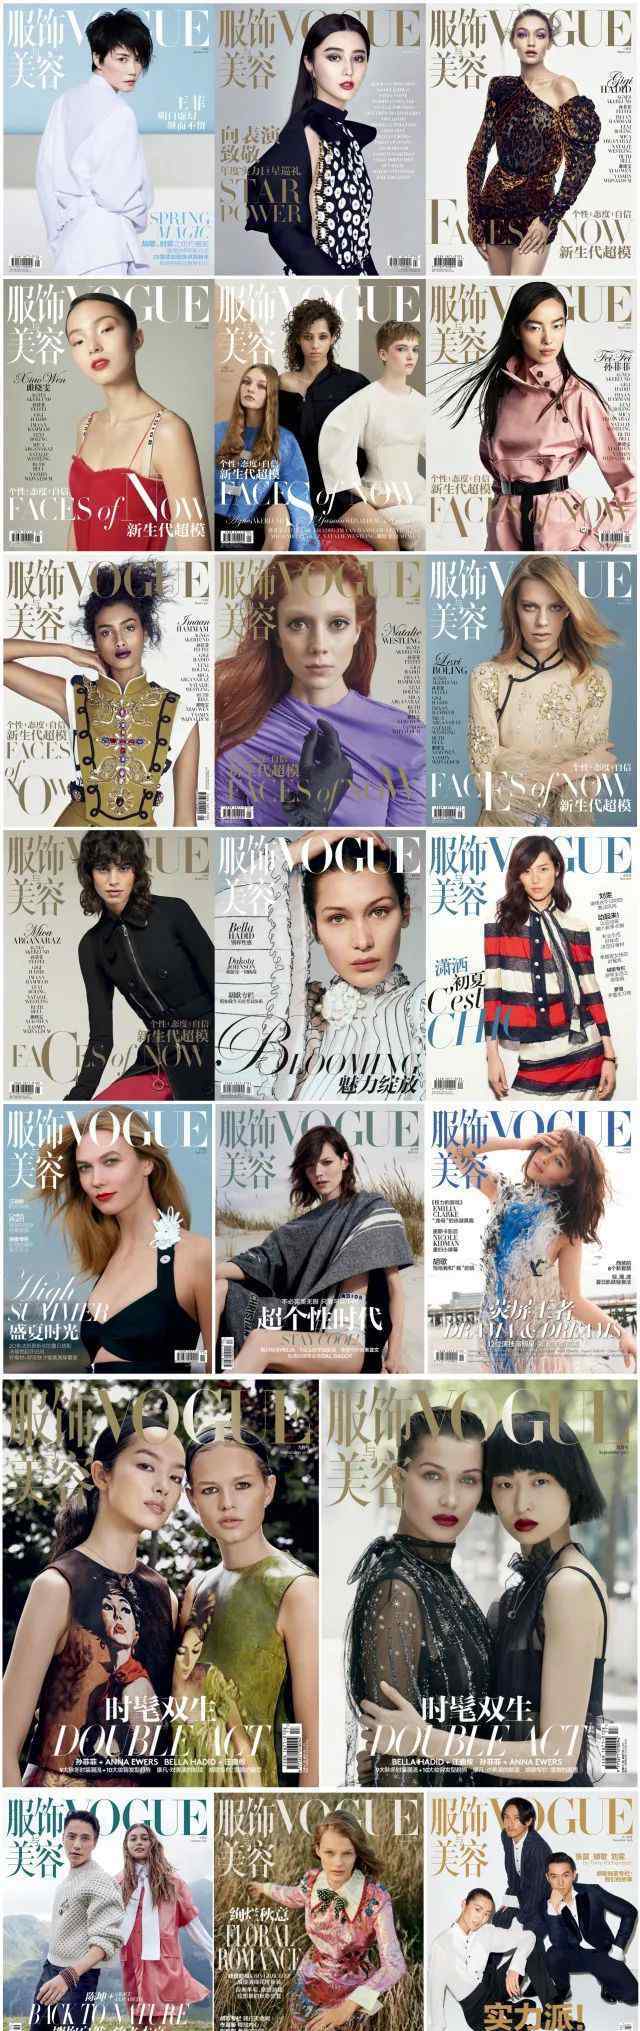 嘉人 《Vogue》《ELLE》《时尚芭莎》《时尚COSMO》《嘉人》，到底哪家杂志才是今年最出彩的？